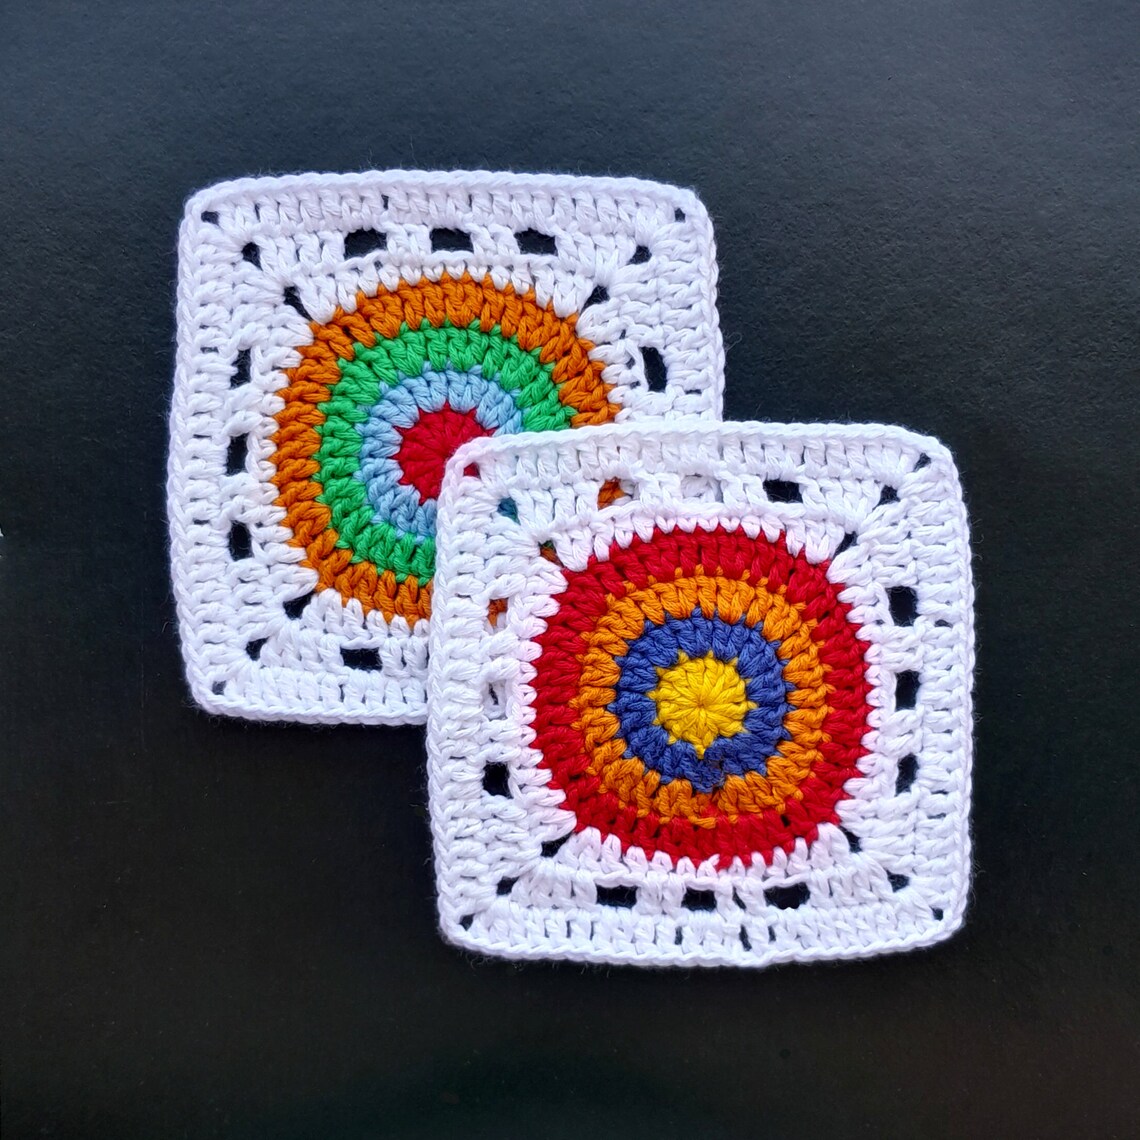 Granny Square Pattern, Crochet Granny Square Pattern, Colored Granny Square
etsy.com/listing/153004…

#Etsy #EtsyShop #EtsySeller #EtsySocial #crochet #GrannySquarePattern #crochetpattern #CrochetPatterns #grannysquare #crocheter #crocheting #crochetideas